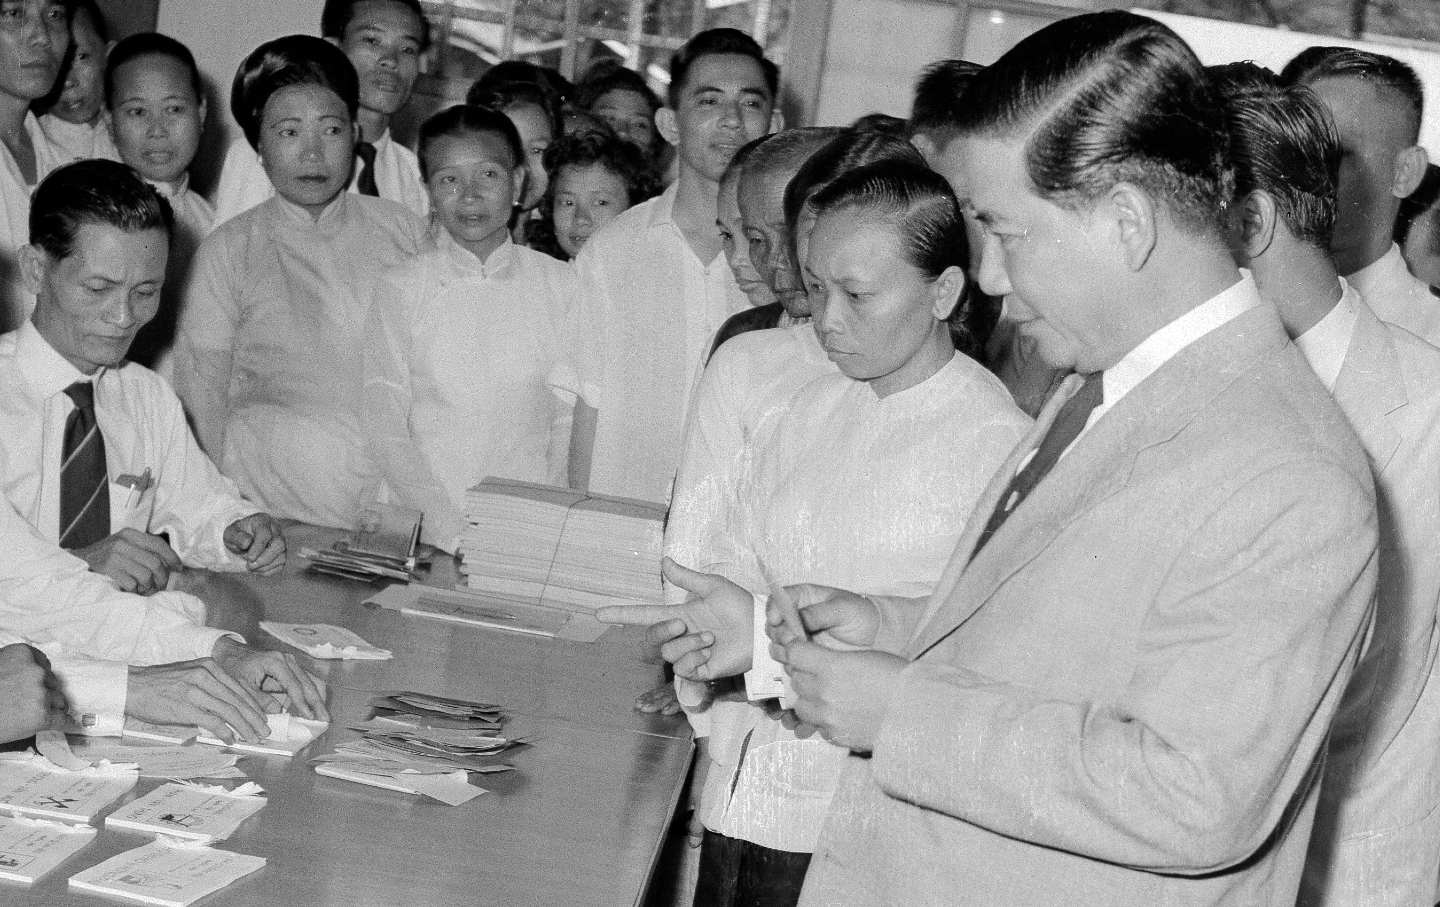 Der südvietnamesische Präsident Ngo Dinh Diem stimmt am 30. August 1959 in Saigon ab. Damals genoss Diems Regierung politische und militärische Unterstützung der USA, doch Ende 1963 wurde er gestürzt und ermordet, da er die Unterstützung der USA verloren hatte.